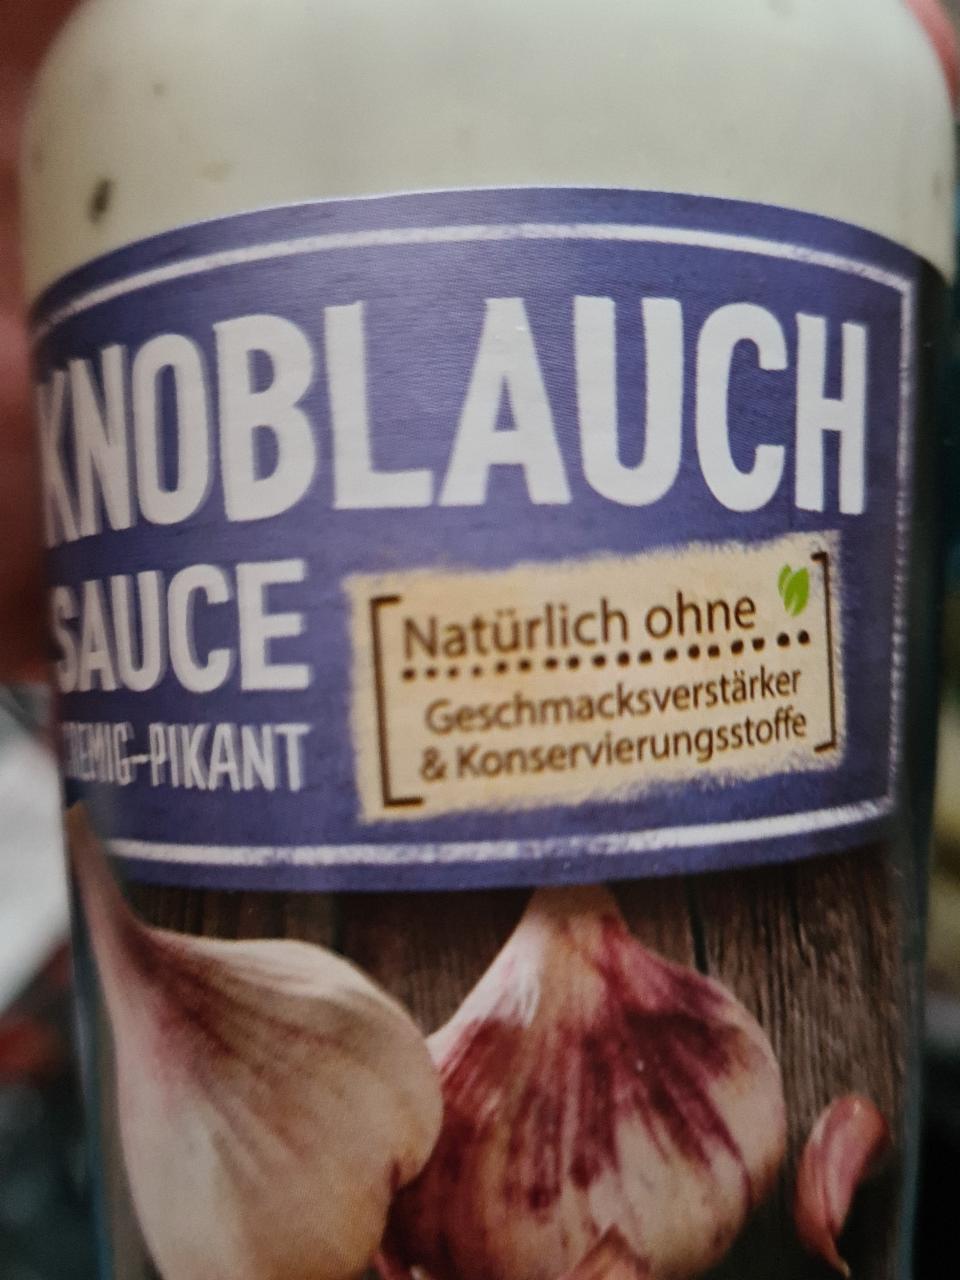 Fotografie - Knoblauch Sauce cremig-pikant Kühne